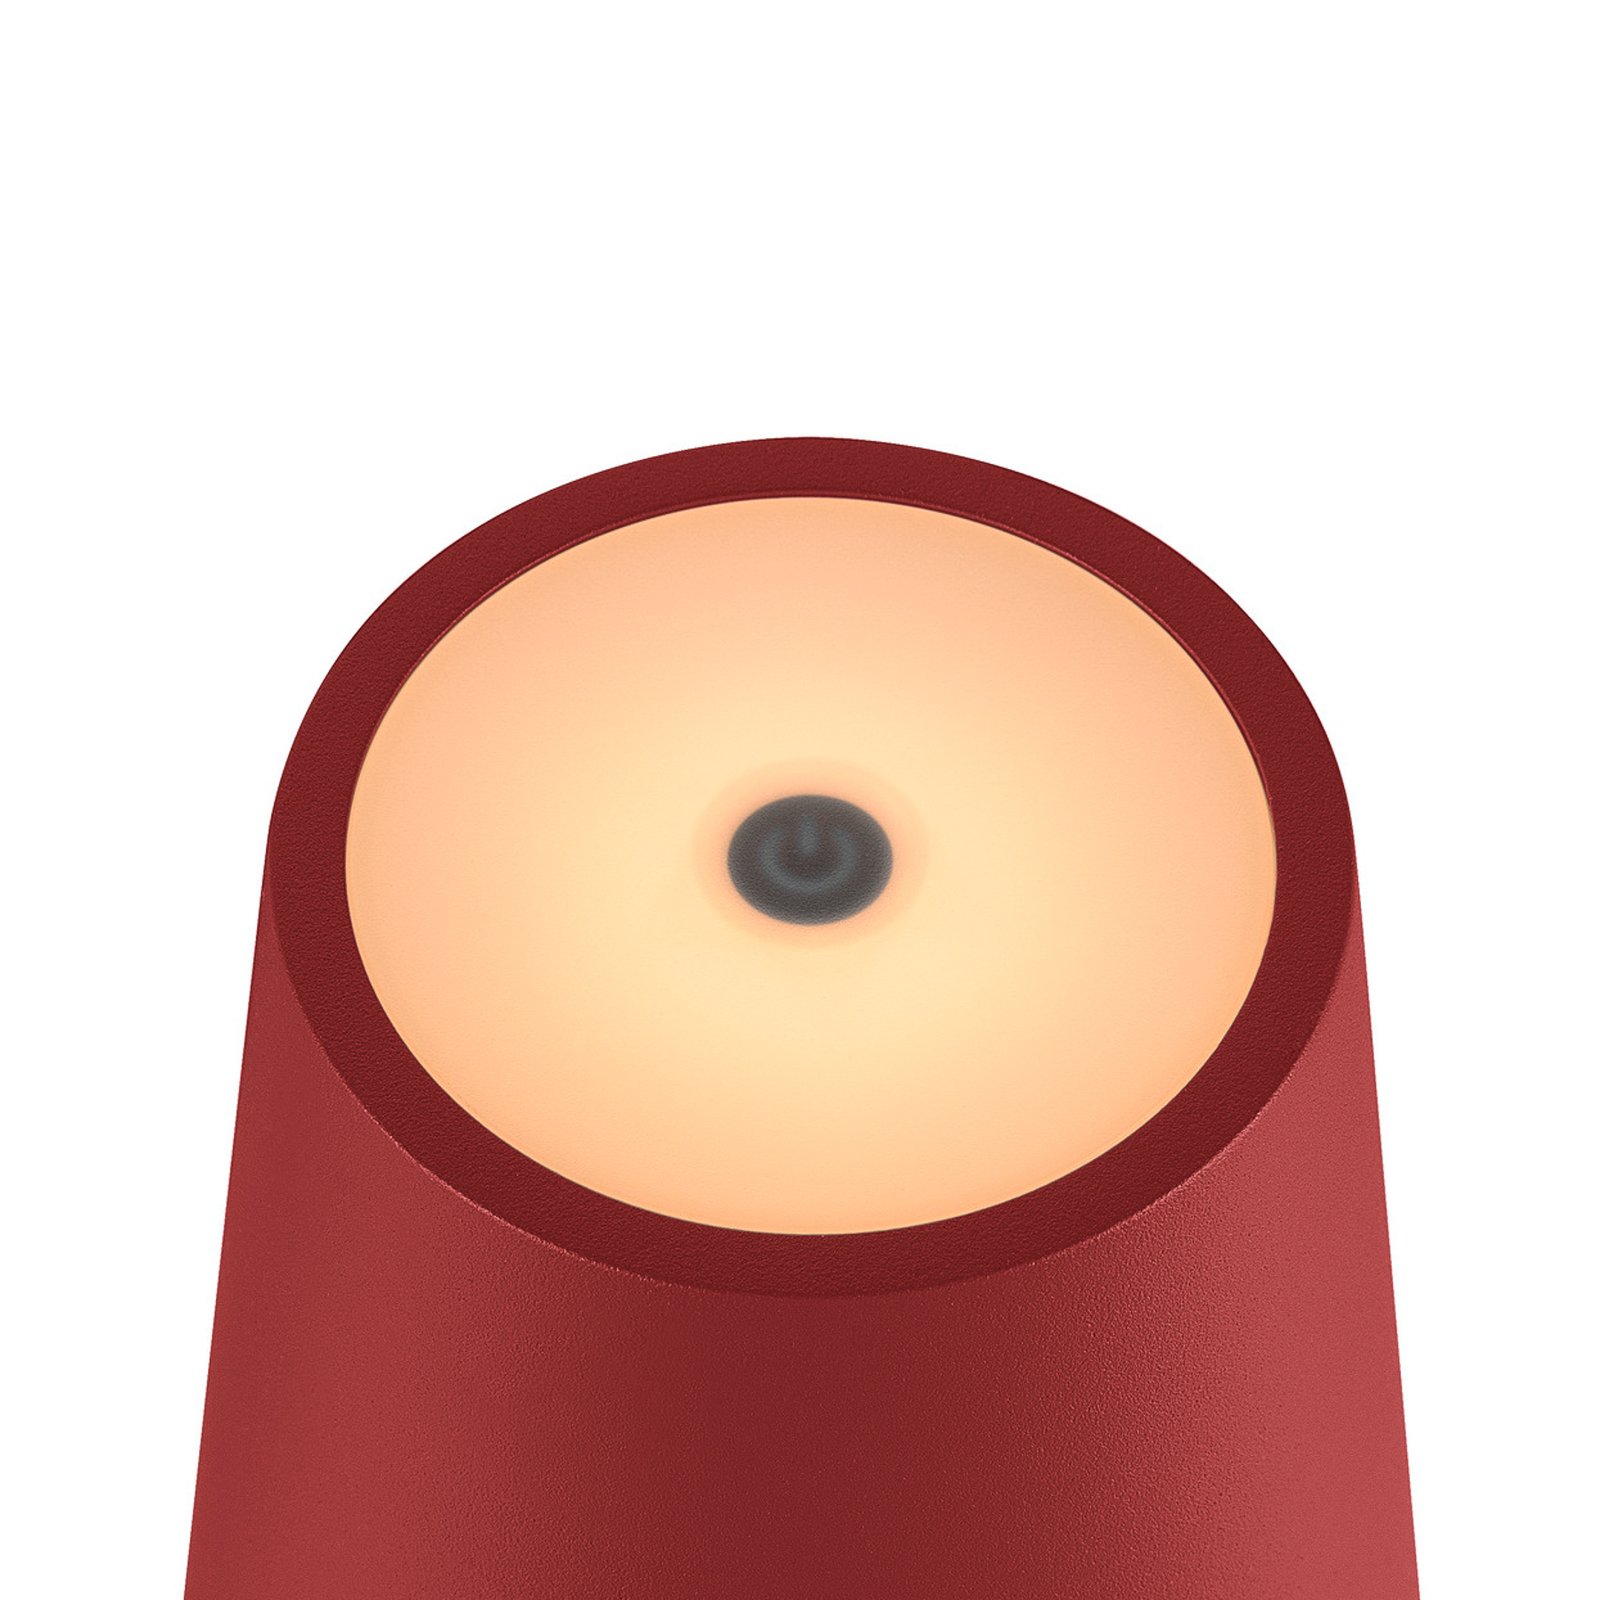 SLV LED oplaadbare lamp Vinolina Two, rood, aluminium, Ø 11 cm, IP65, CCT